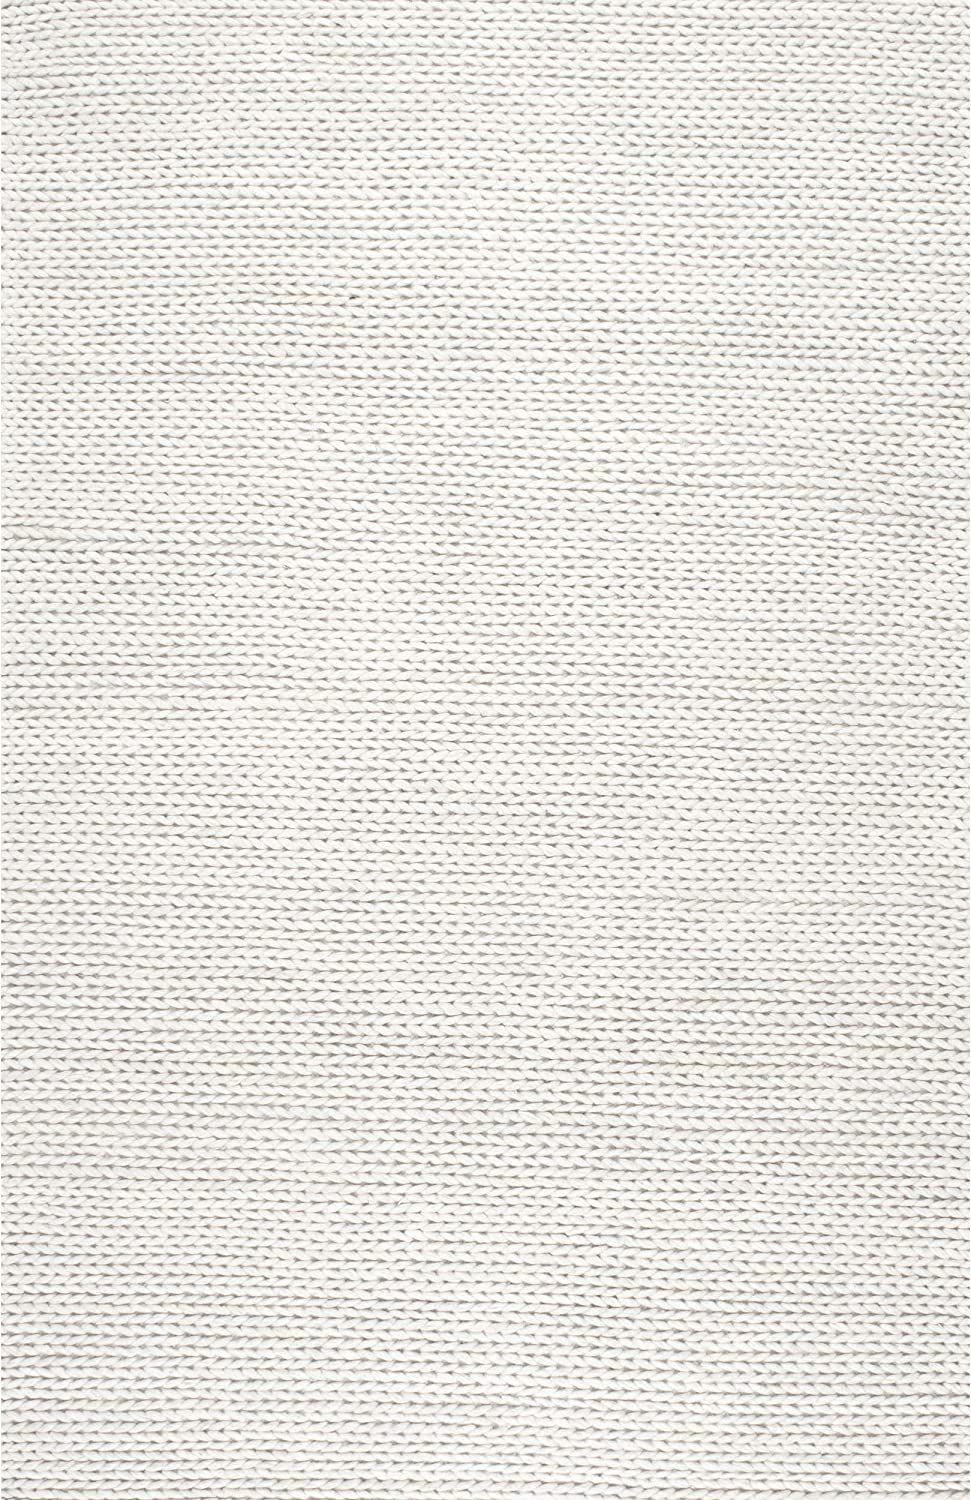 NuLOOM Penelope Braided Wool Area Rug, 5' x 8', Off-White | Amazon (US)